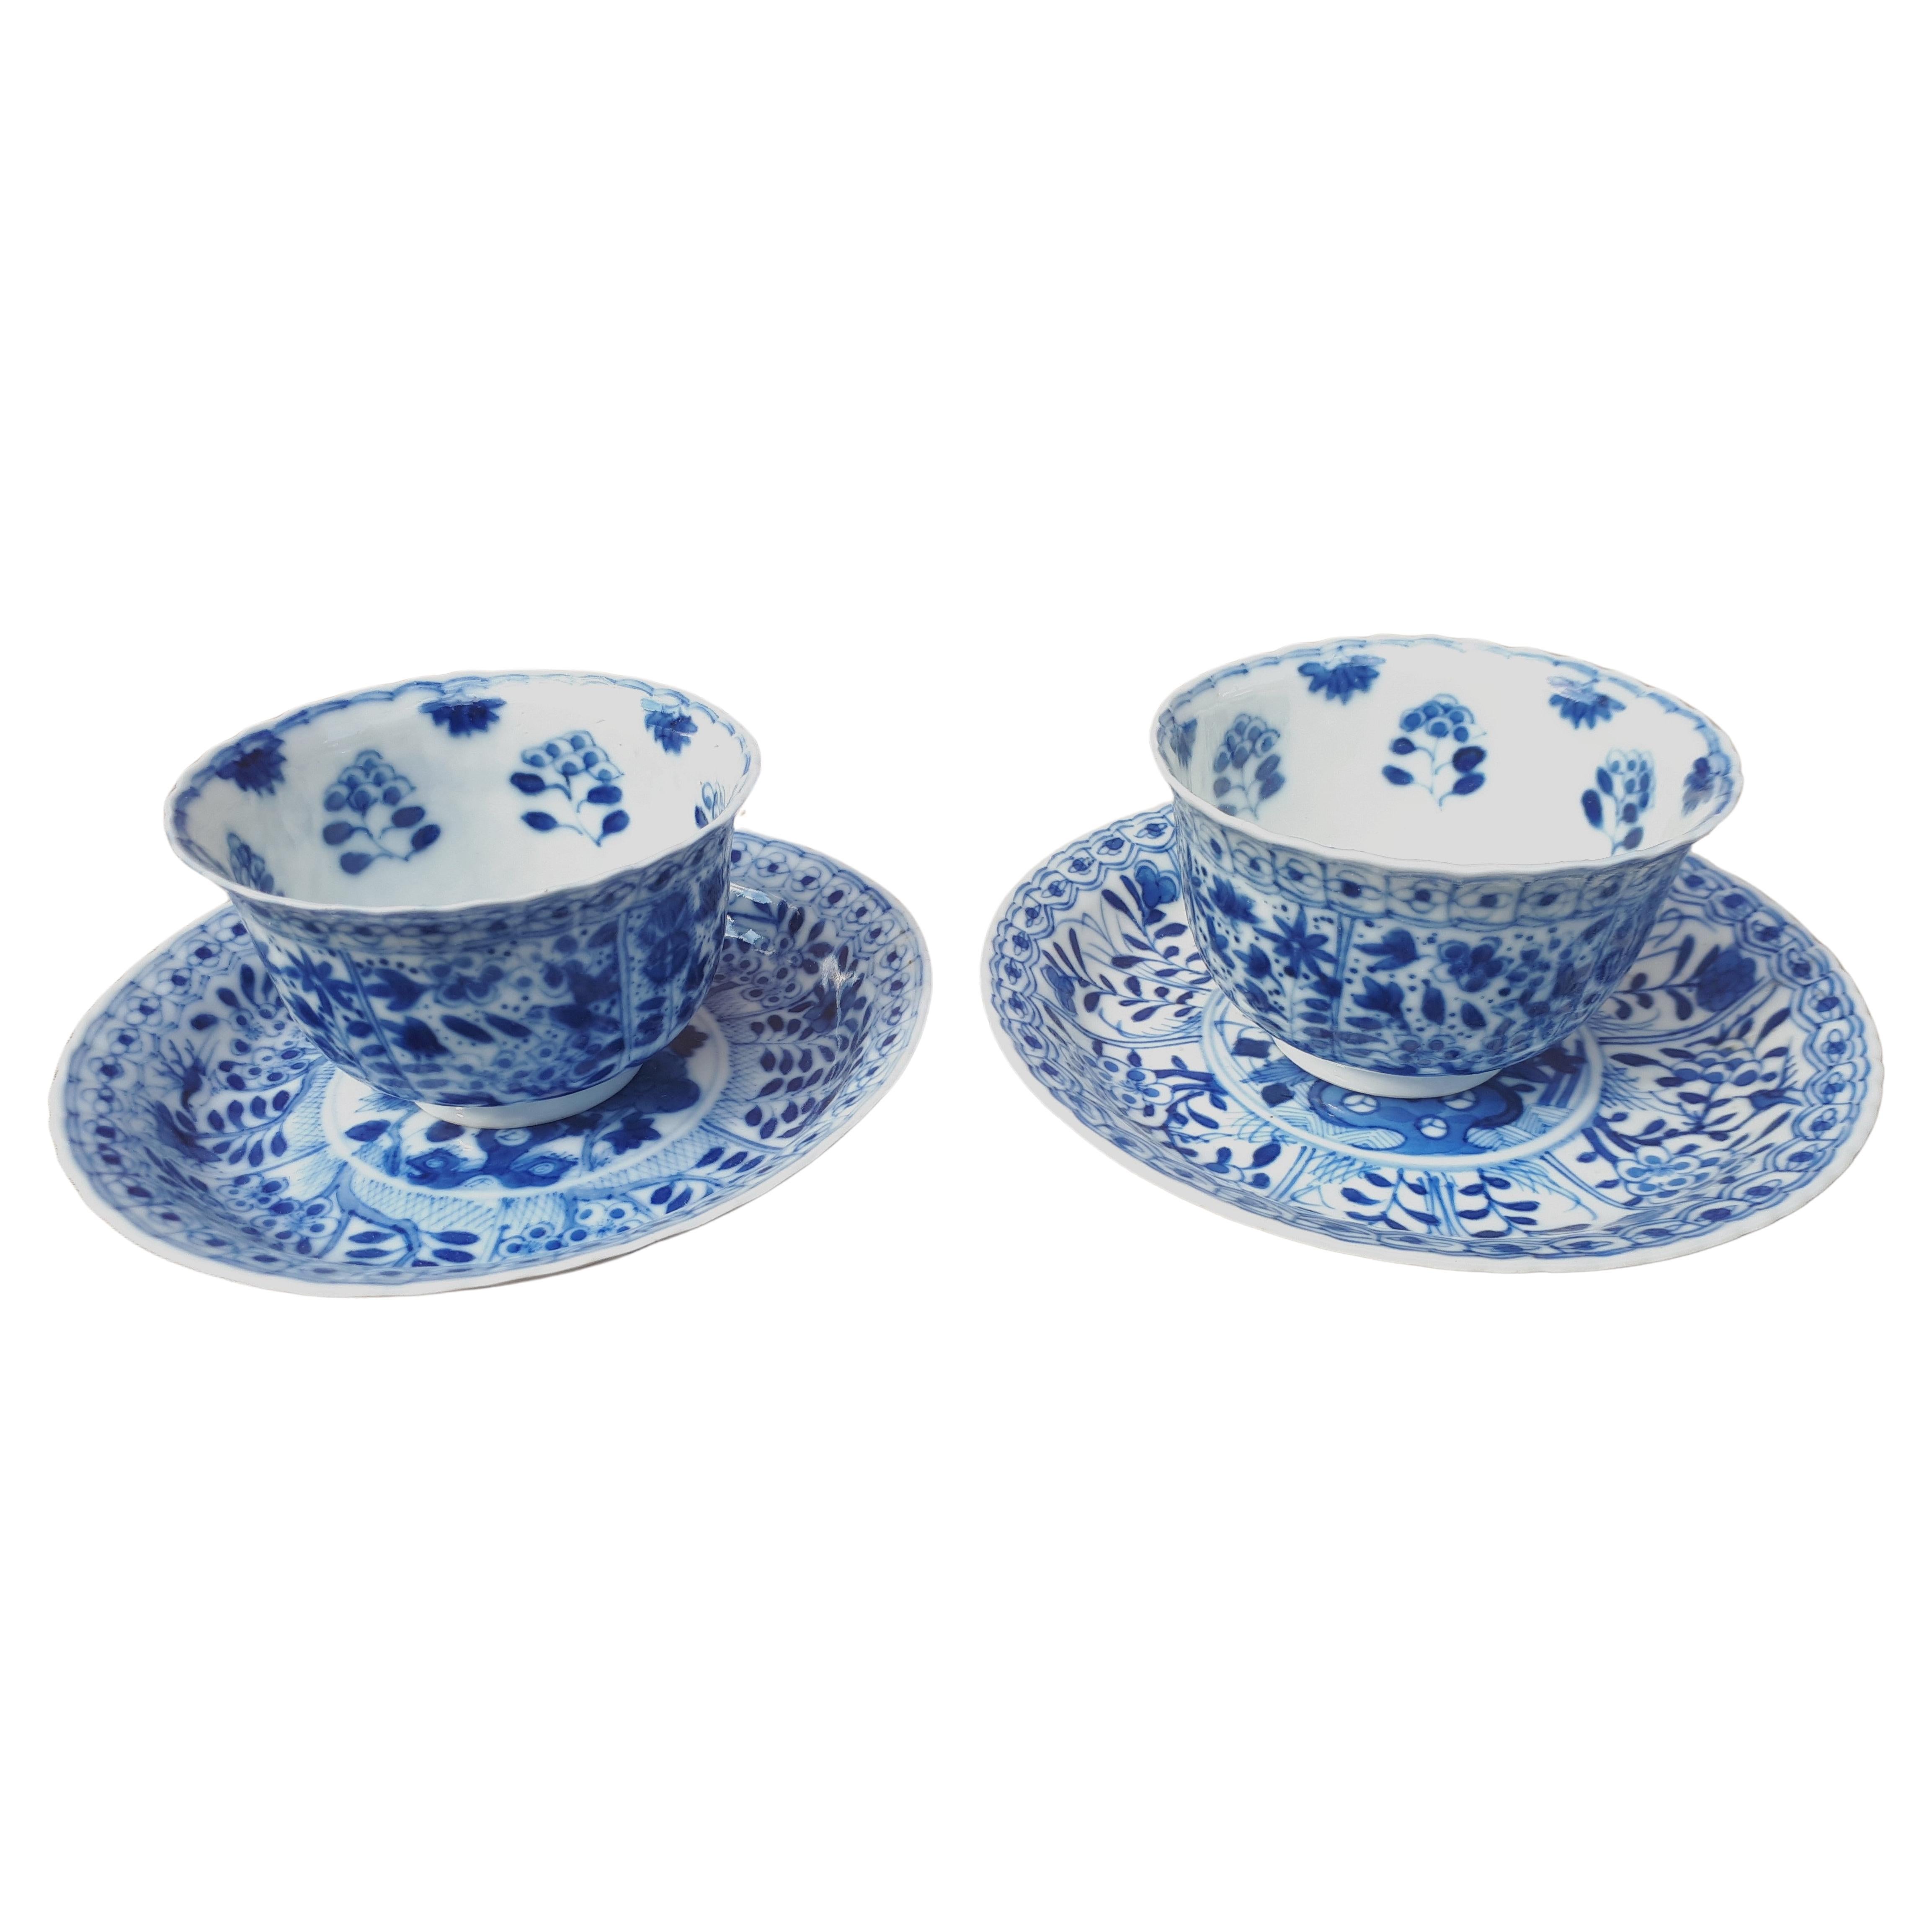 Paire de tasses et soucoupes chinoises bleues et blanches, période Kangxi